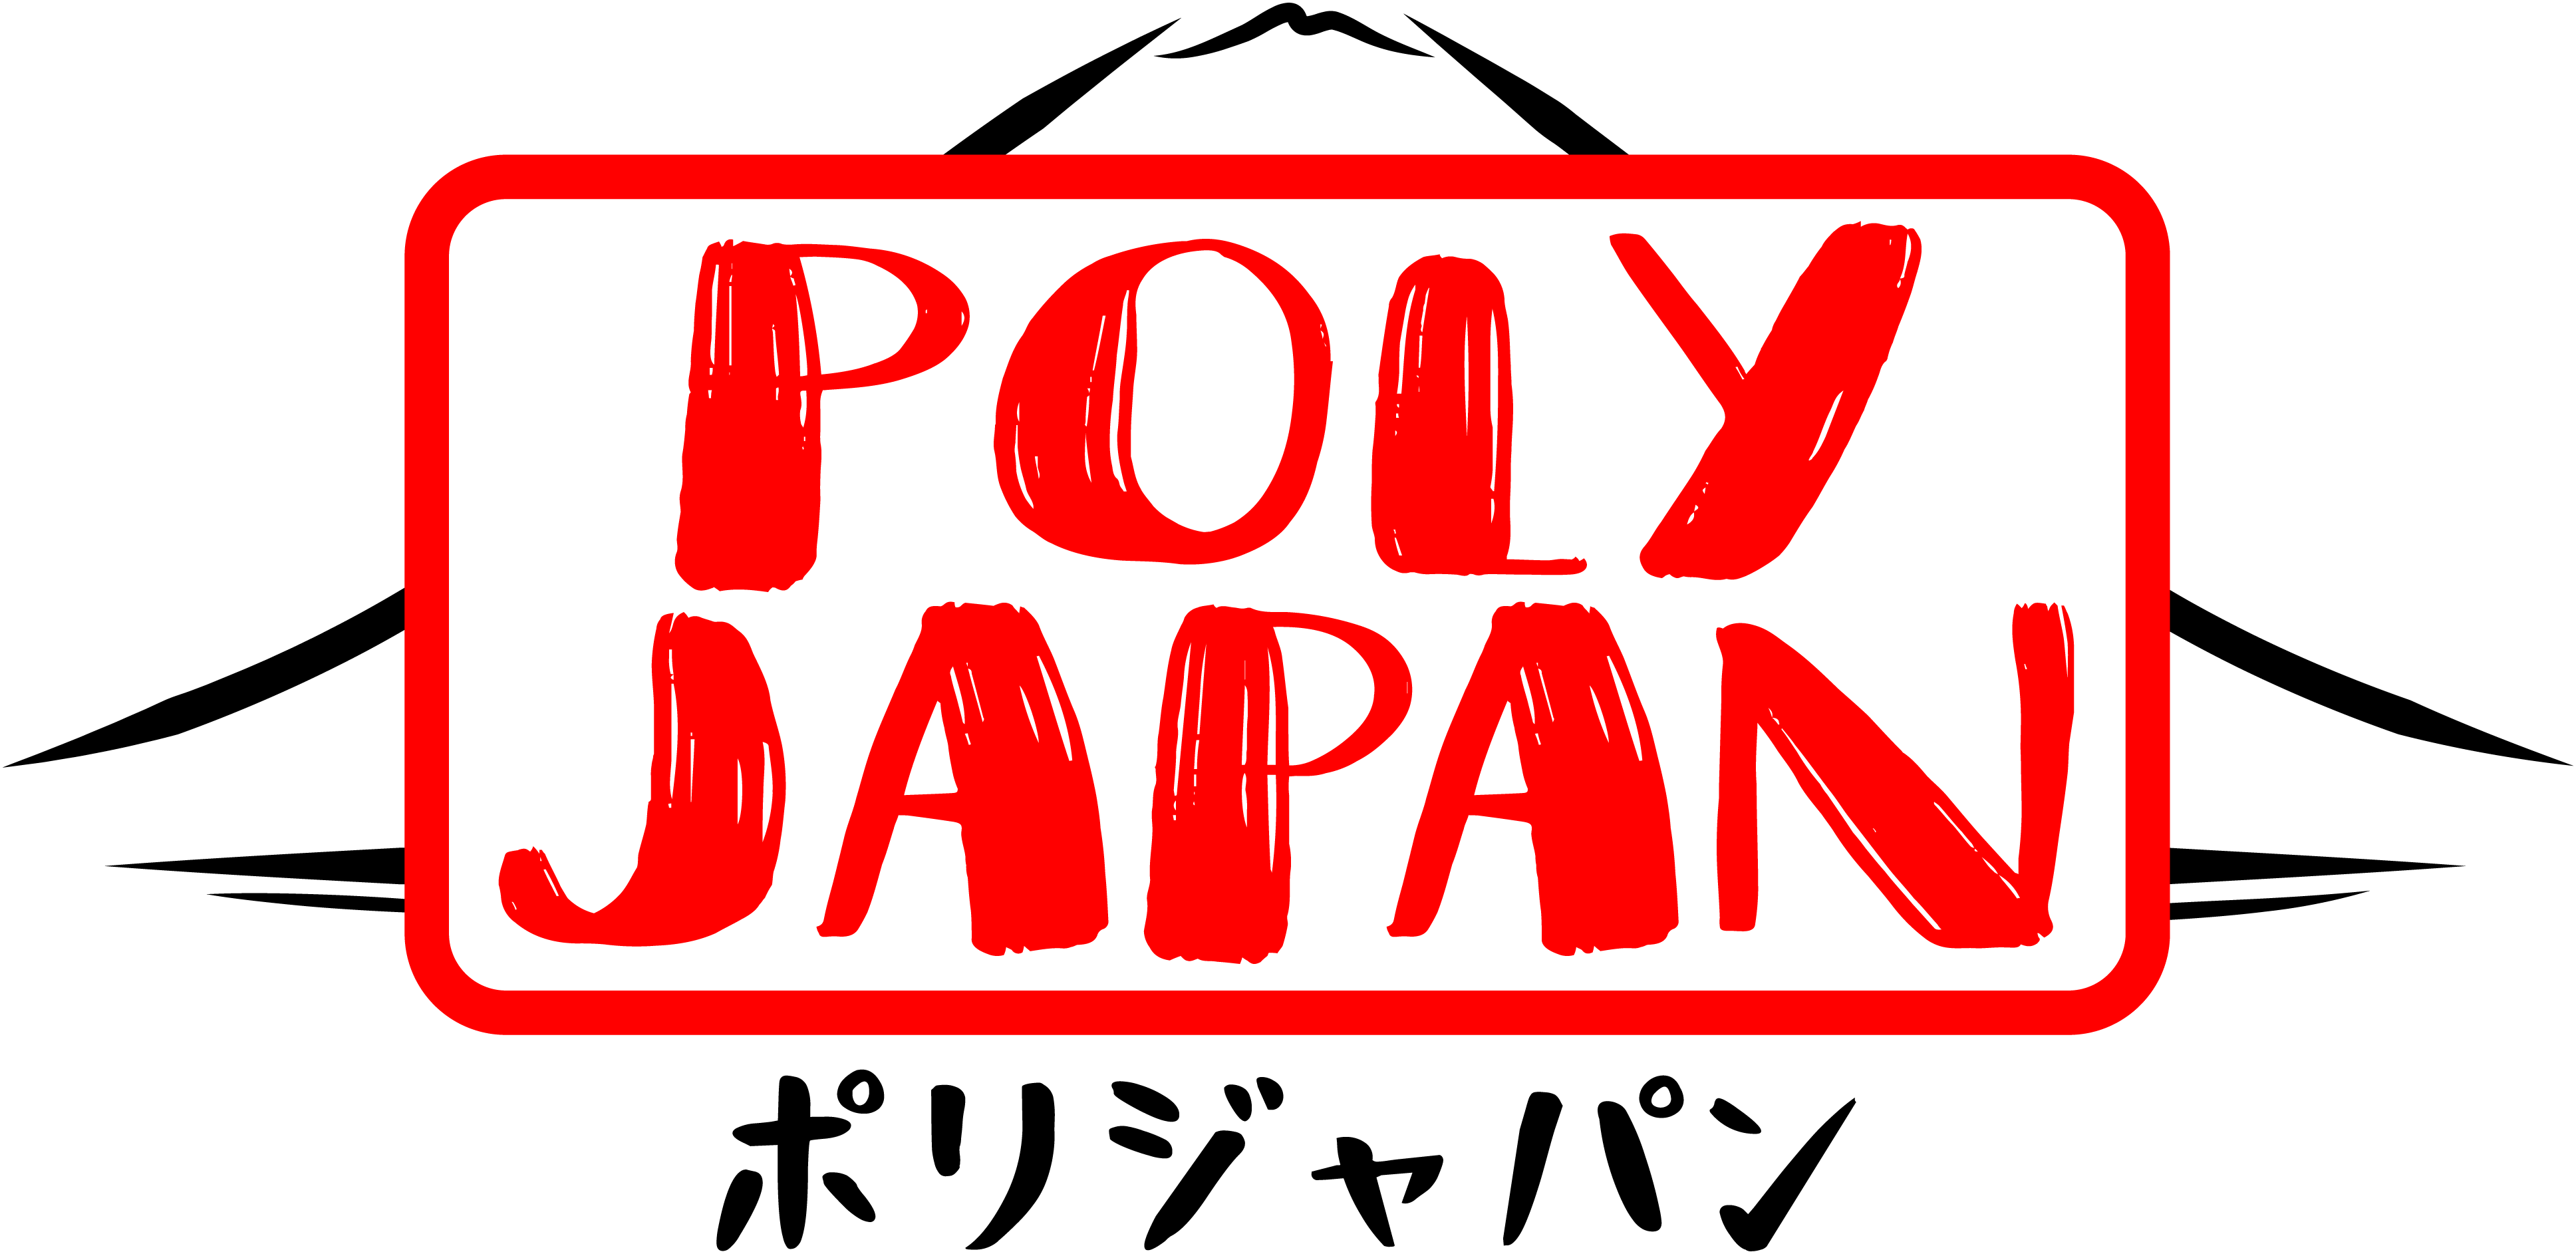 polyjapan logo